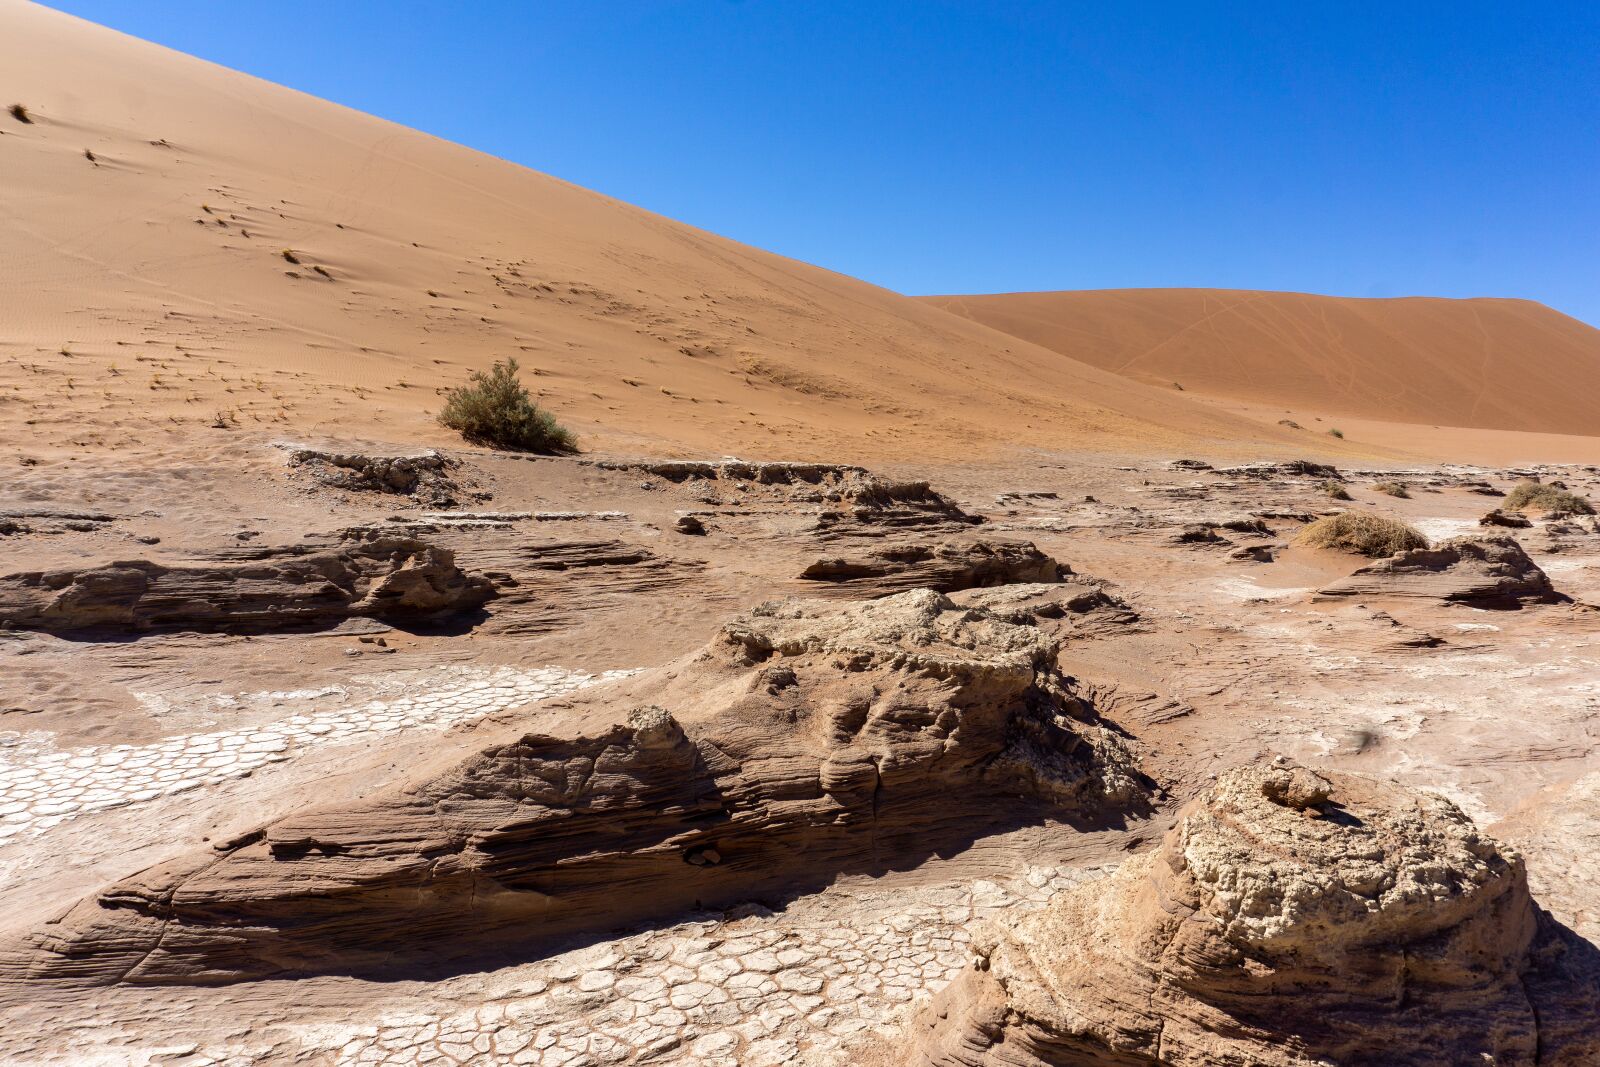 Sony E 16-50mm F3.5-5.6 PZ OSS sample photo. Desert, dunes, sand photography